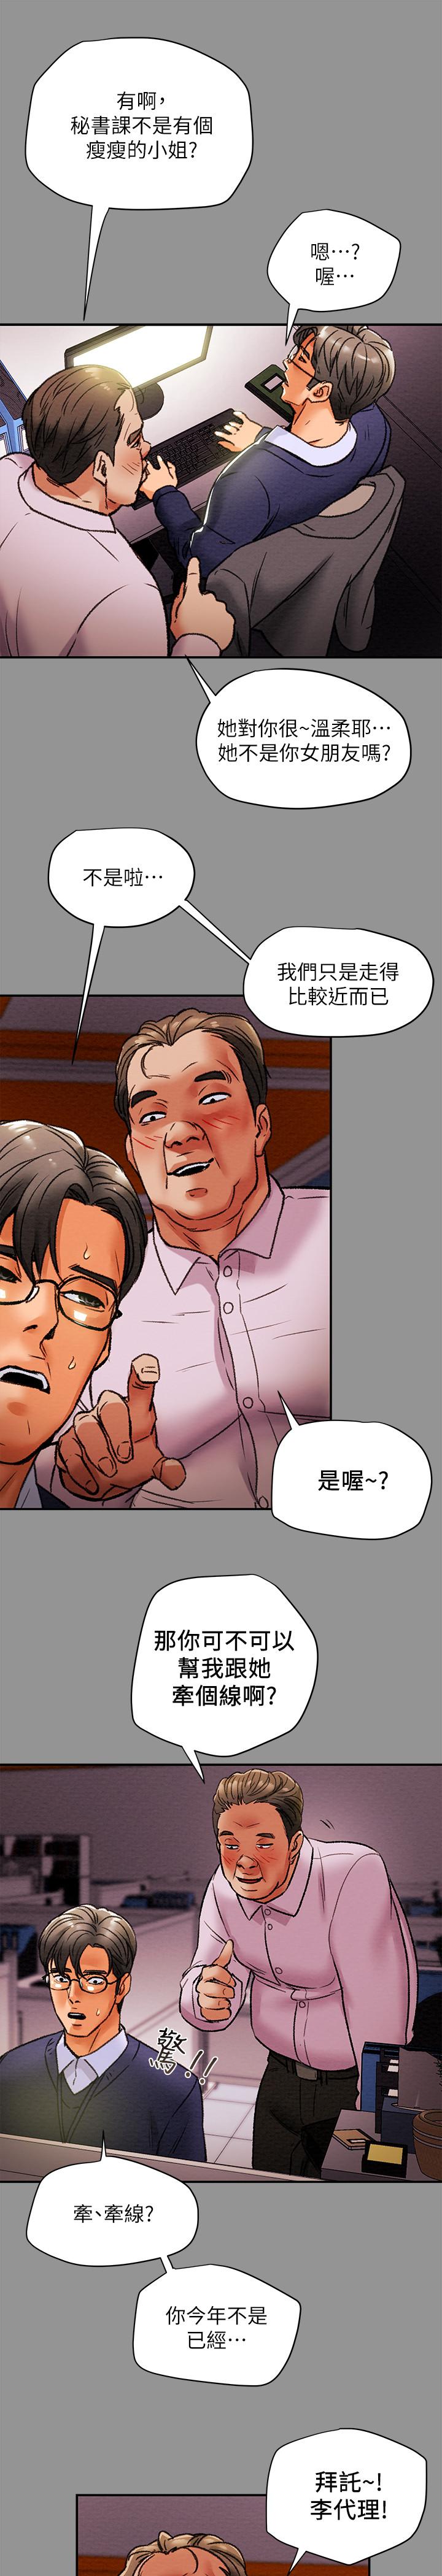 韩国污漫画 純情女攻略計劃 第16话-脱一半的OL最诱人 32